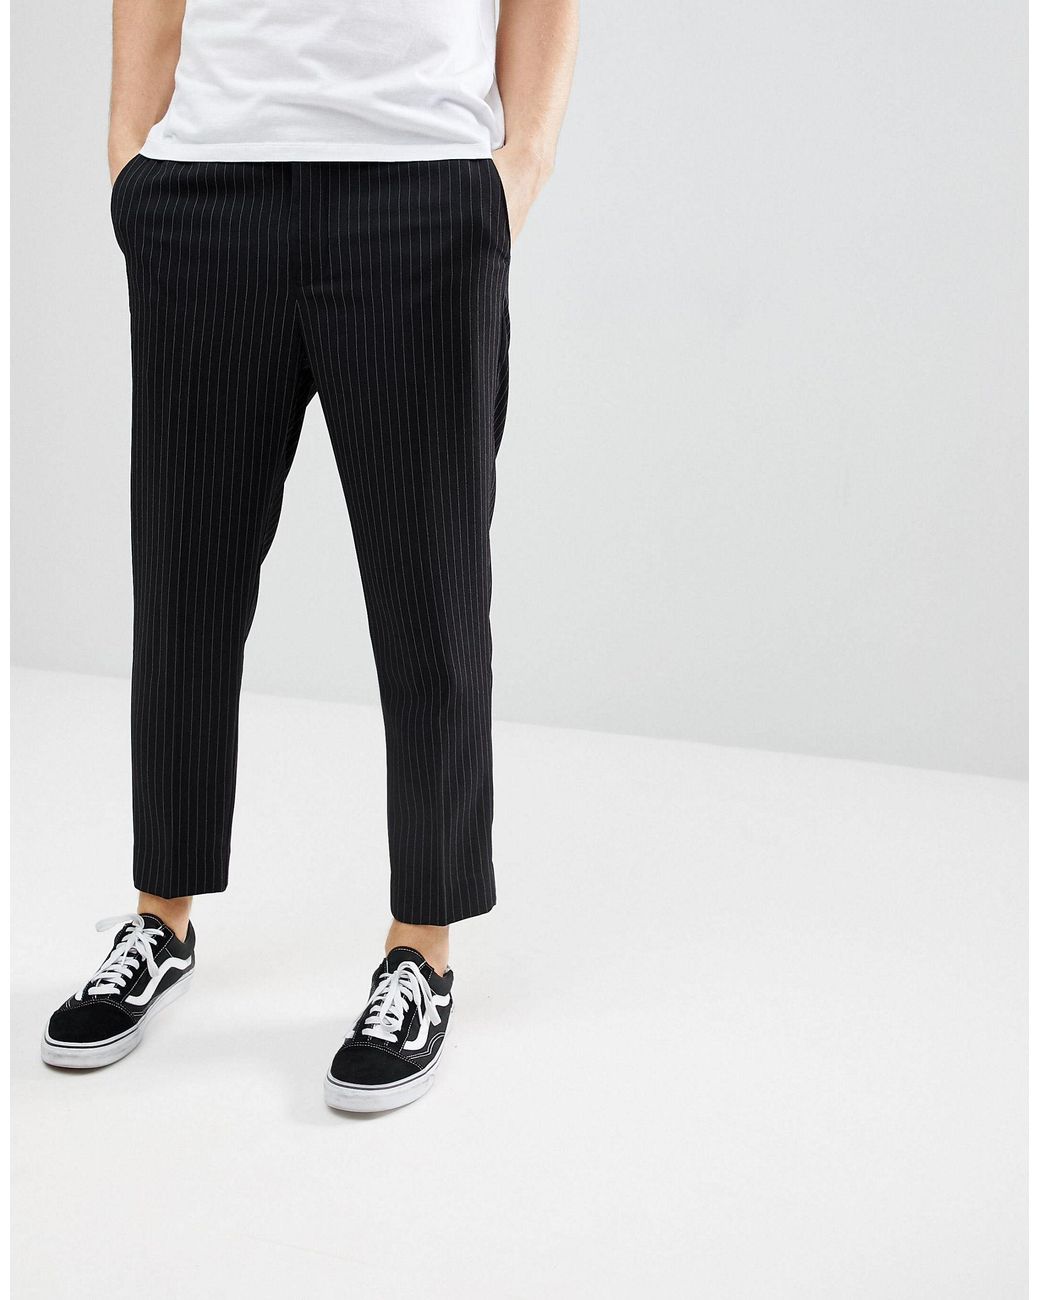 Bershka check wide-leg trousers in white and black – Garmisland